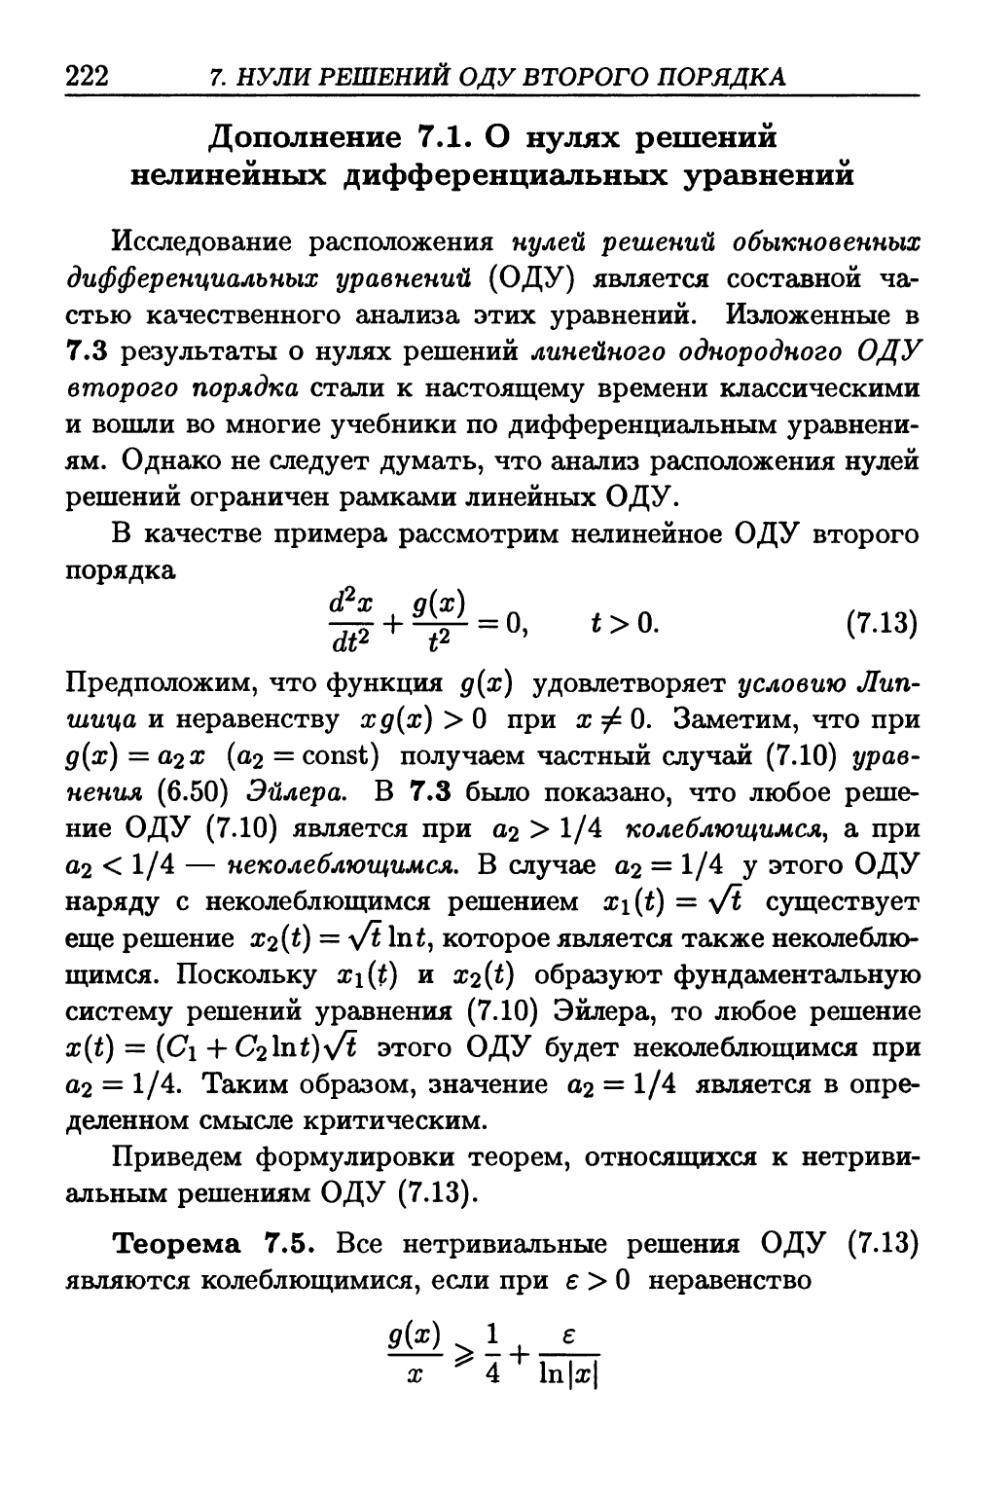 Д.7.1. О нулях решений нелинейных дифференциальных уравнений